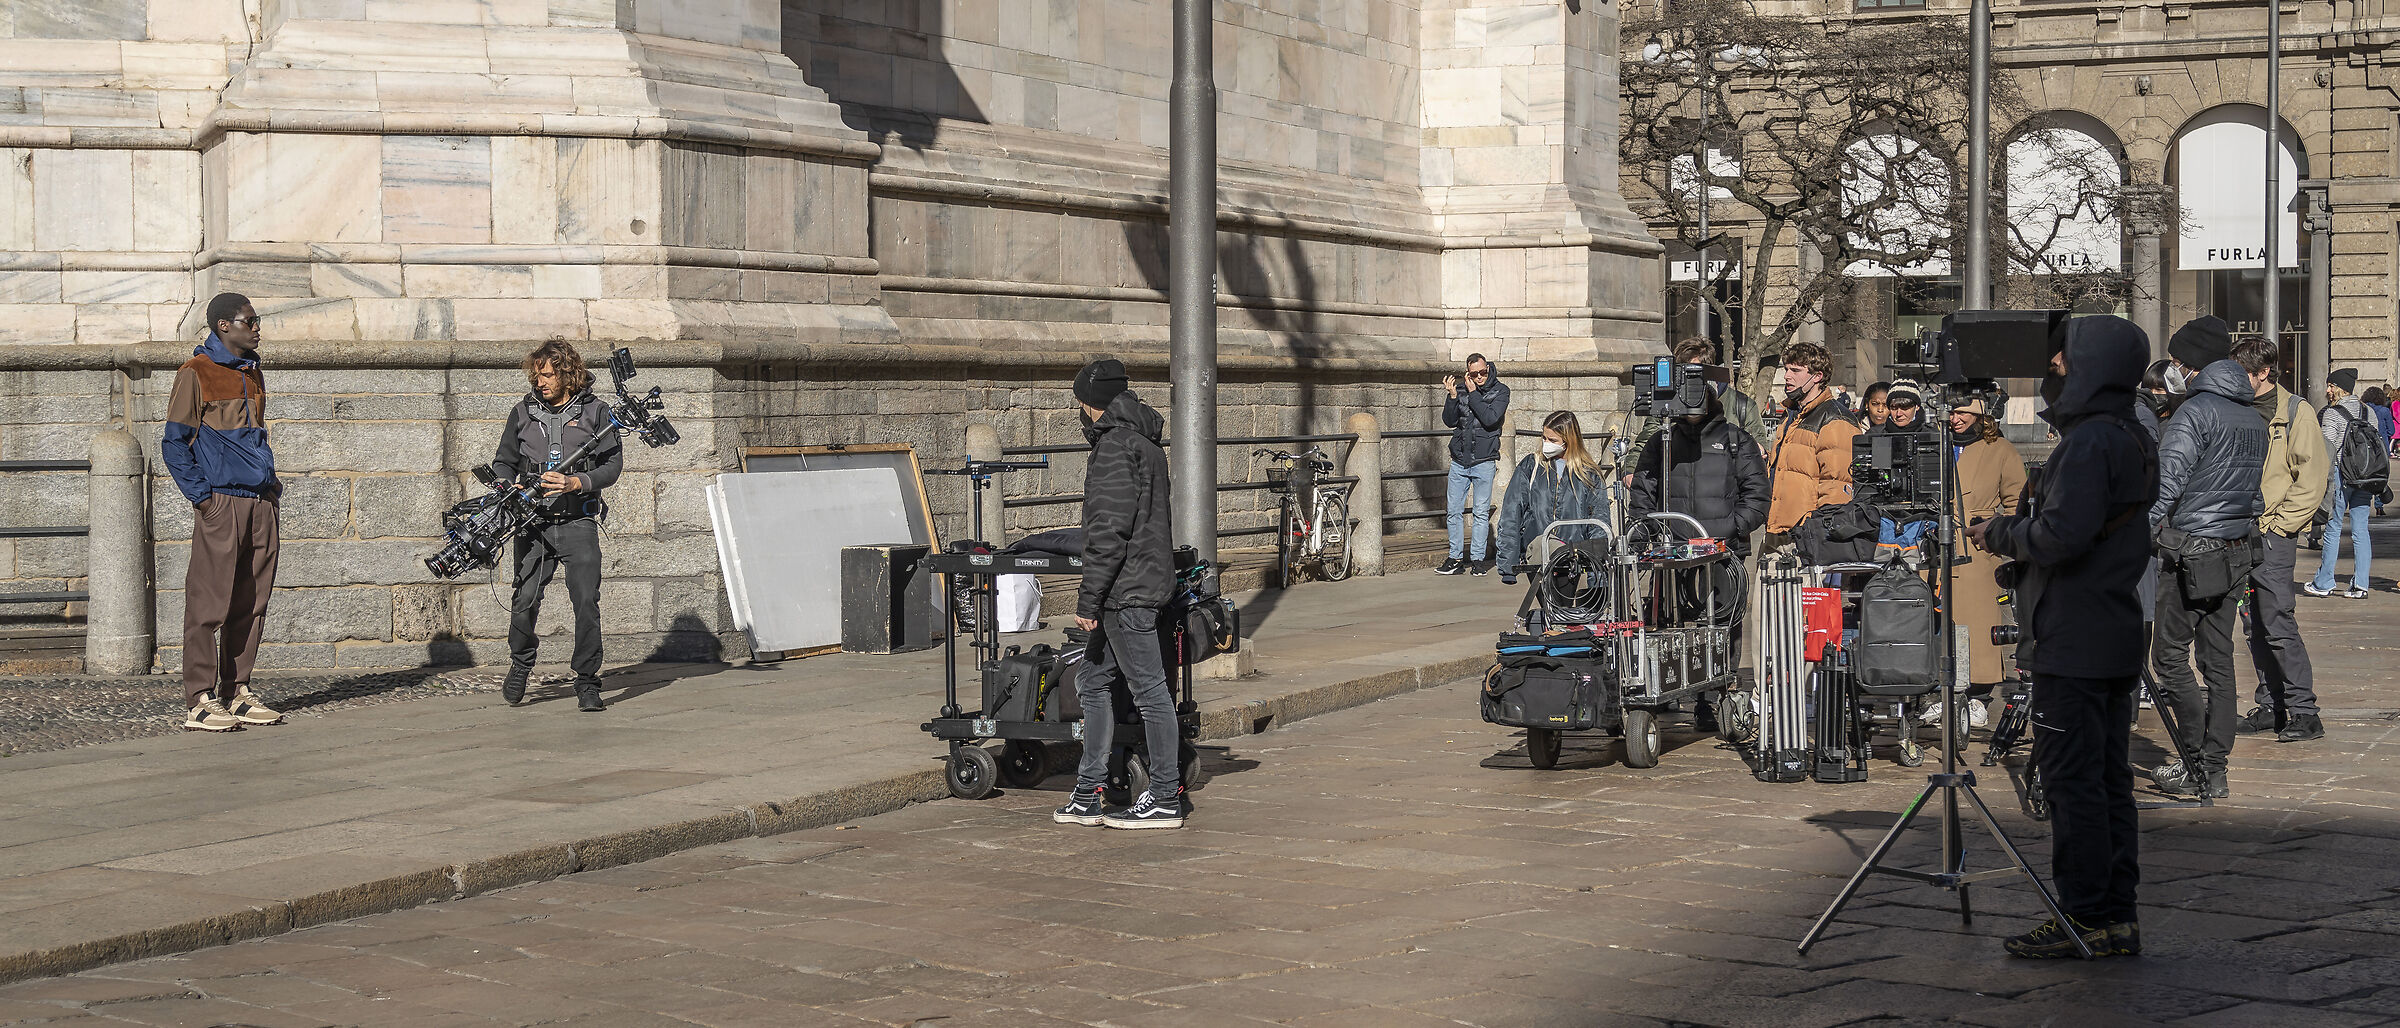 Piazza del Duomo - Making a video - 1...